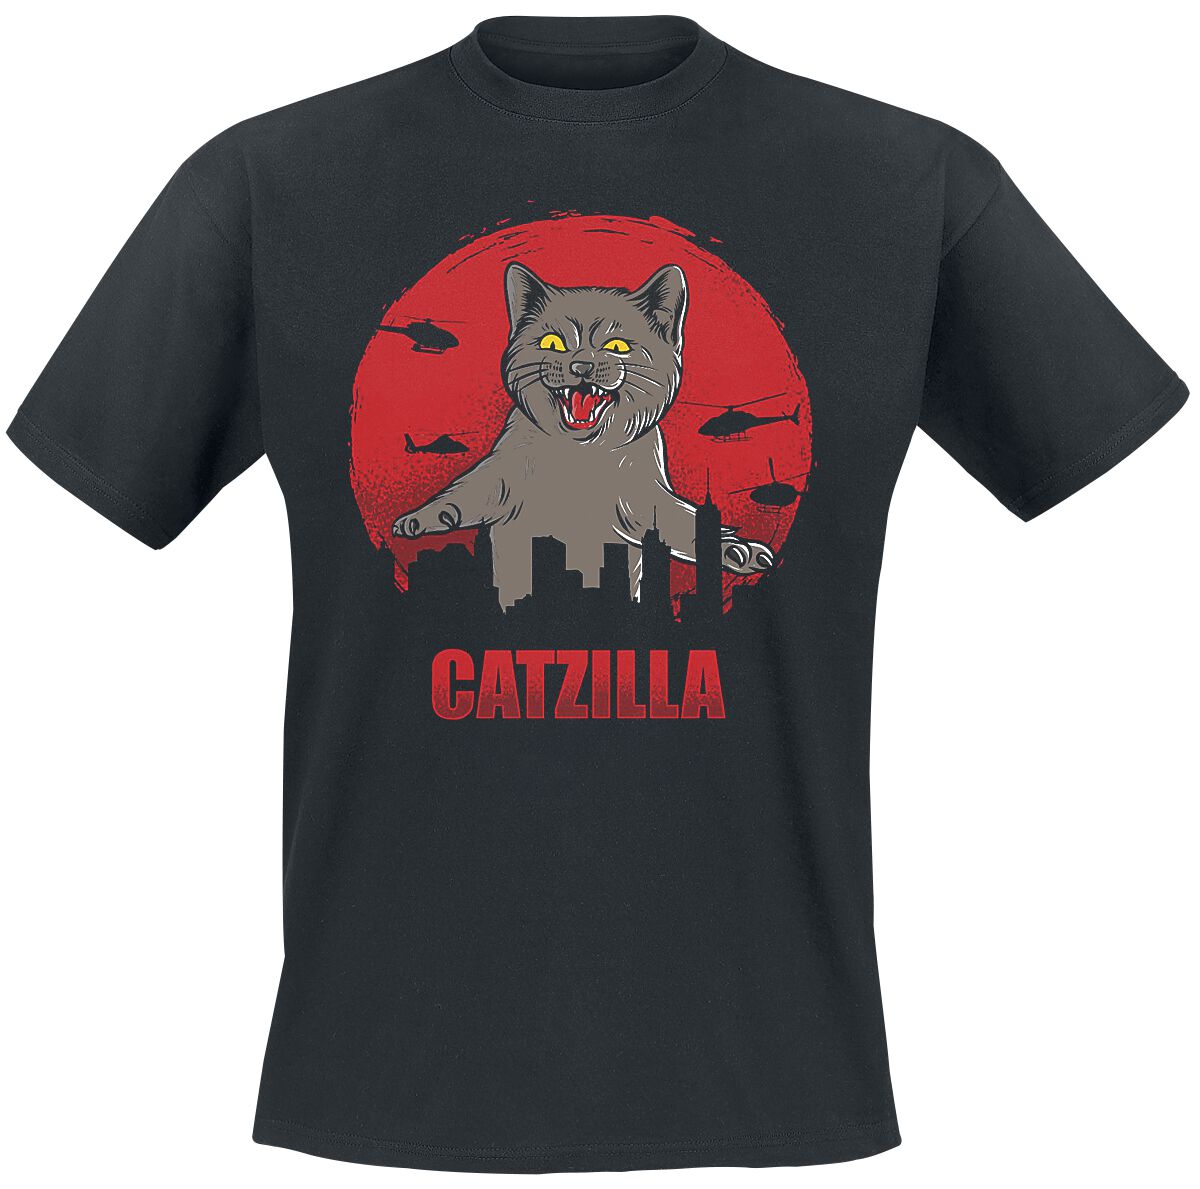 Tierisch T-Shirt - Catzilla - XL bis 3XL - für Männer - Größe XL - schwarz